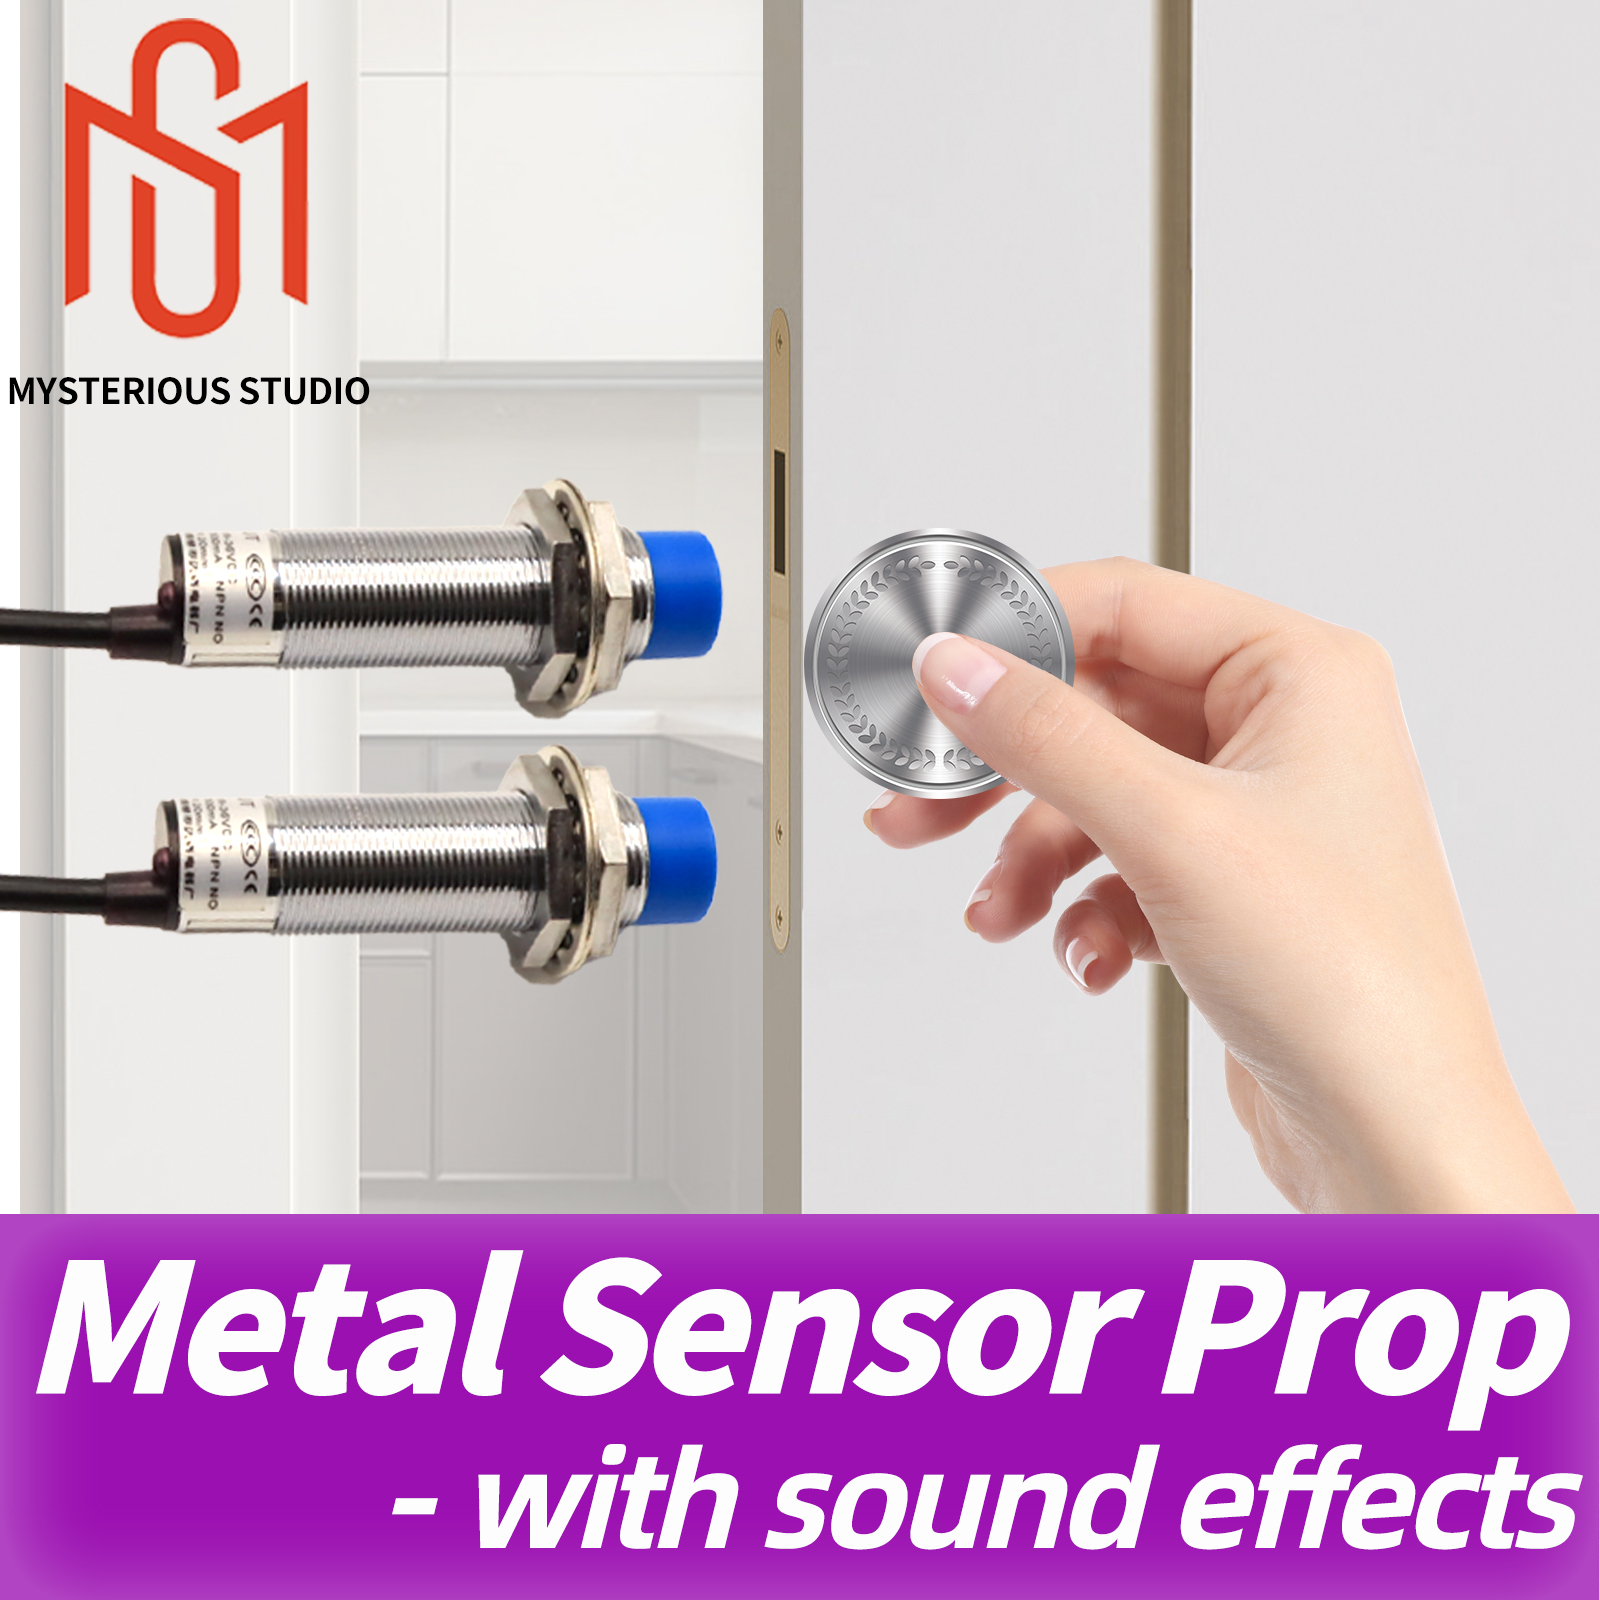 Mysterieuze Studio Escape Room Props Metalen sensor zonder direct contact Plaats metalen voorwerpen dicht bij metalen sensoren om te ontgrendelen